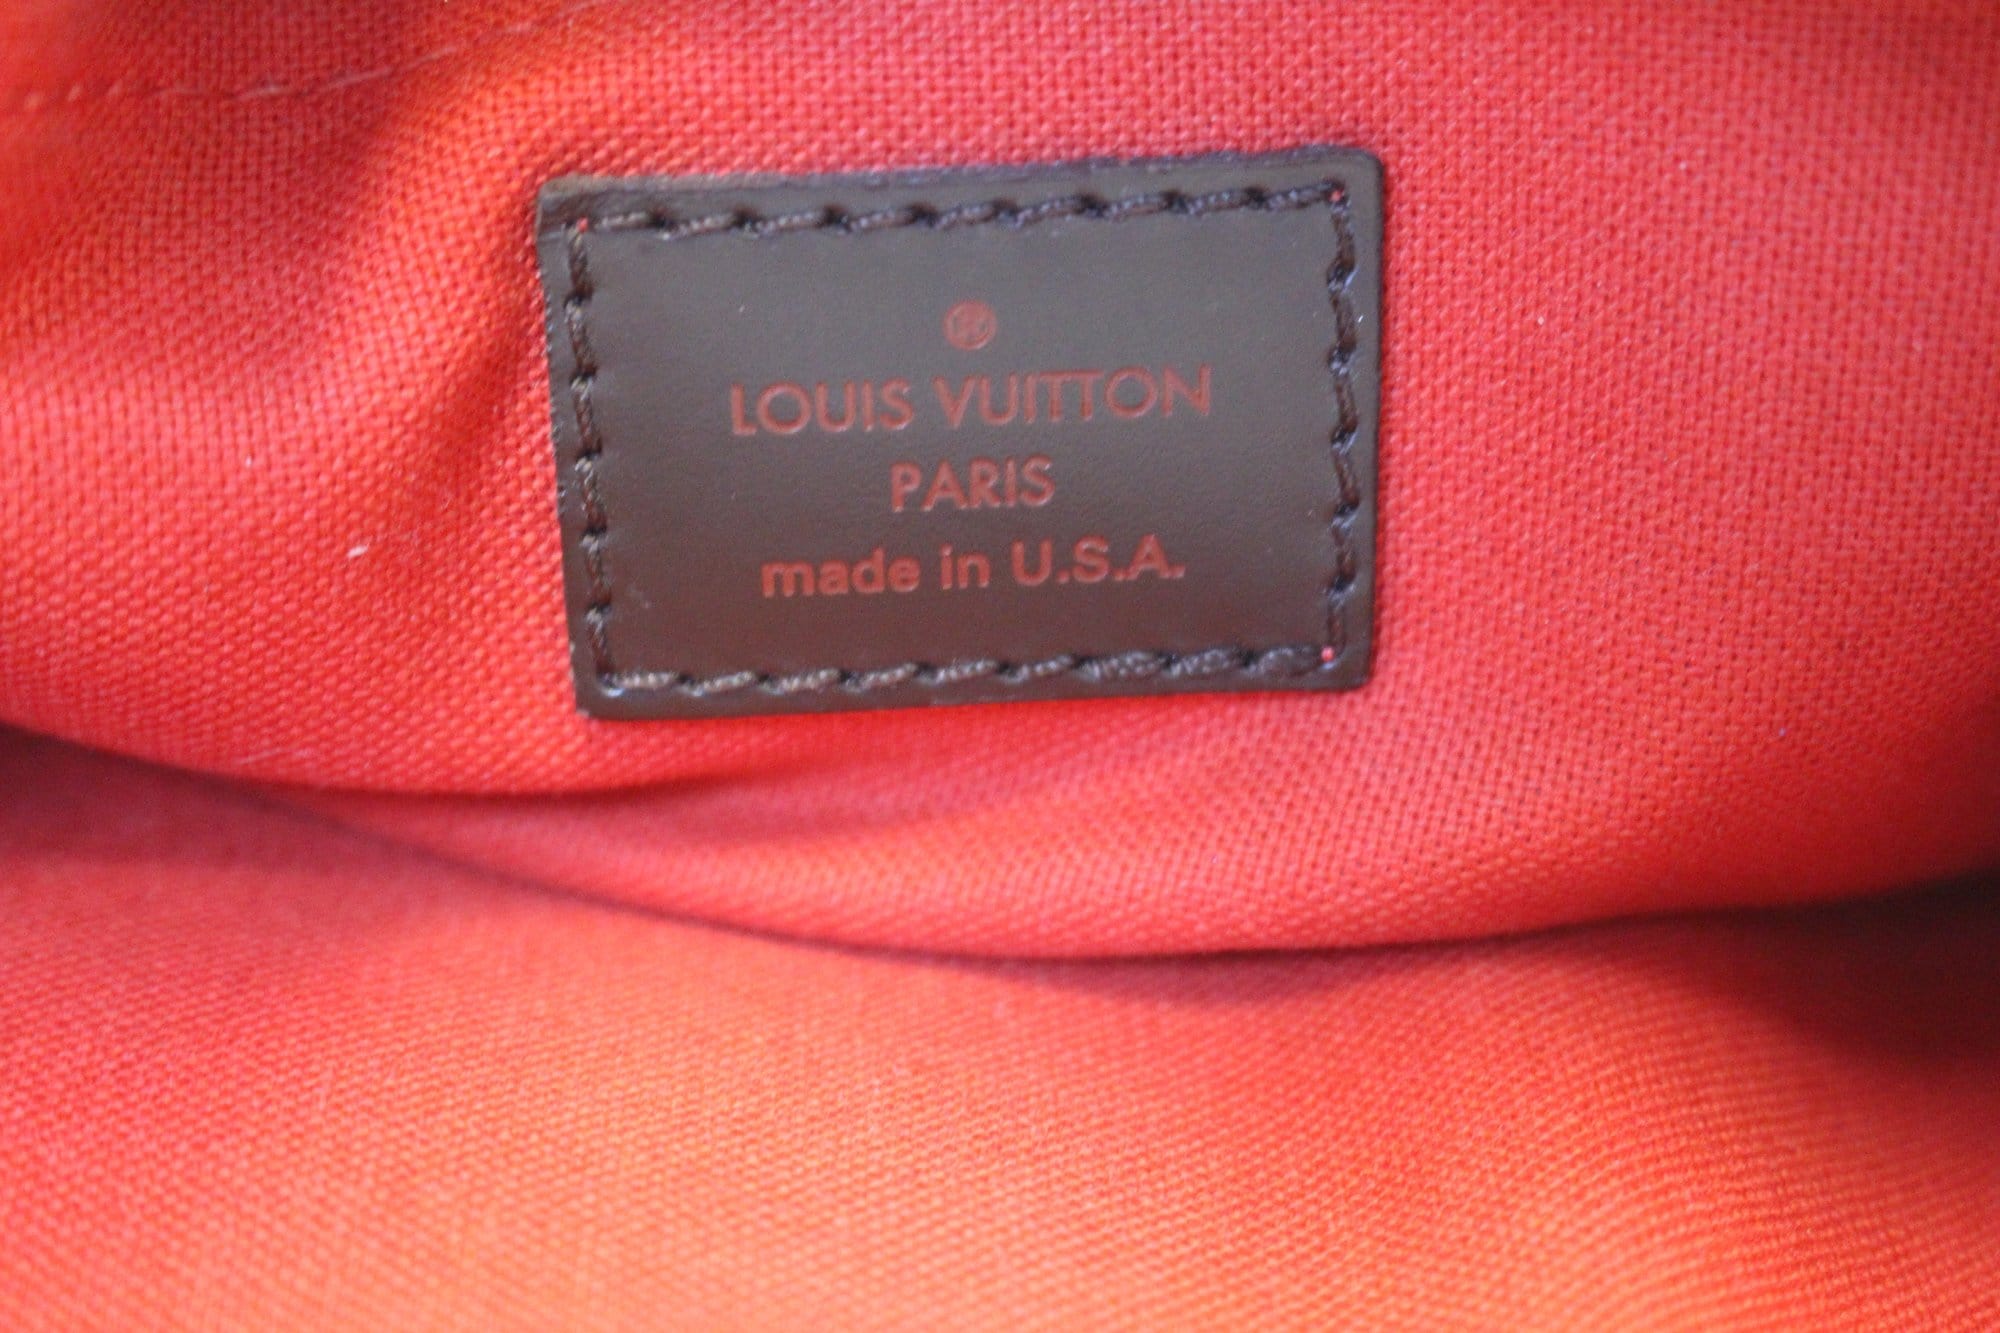 Thames - ep_vintage luxury Store - Vuitton - Sac bandoulière Louis